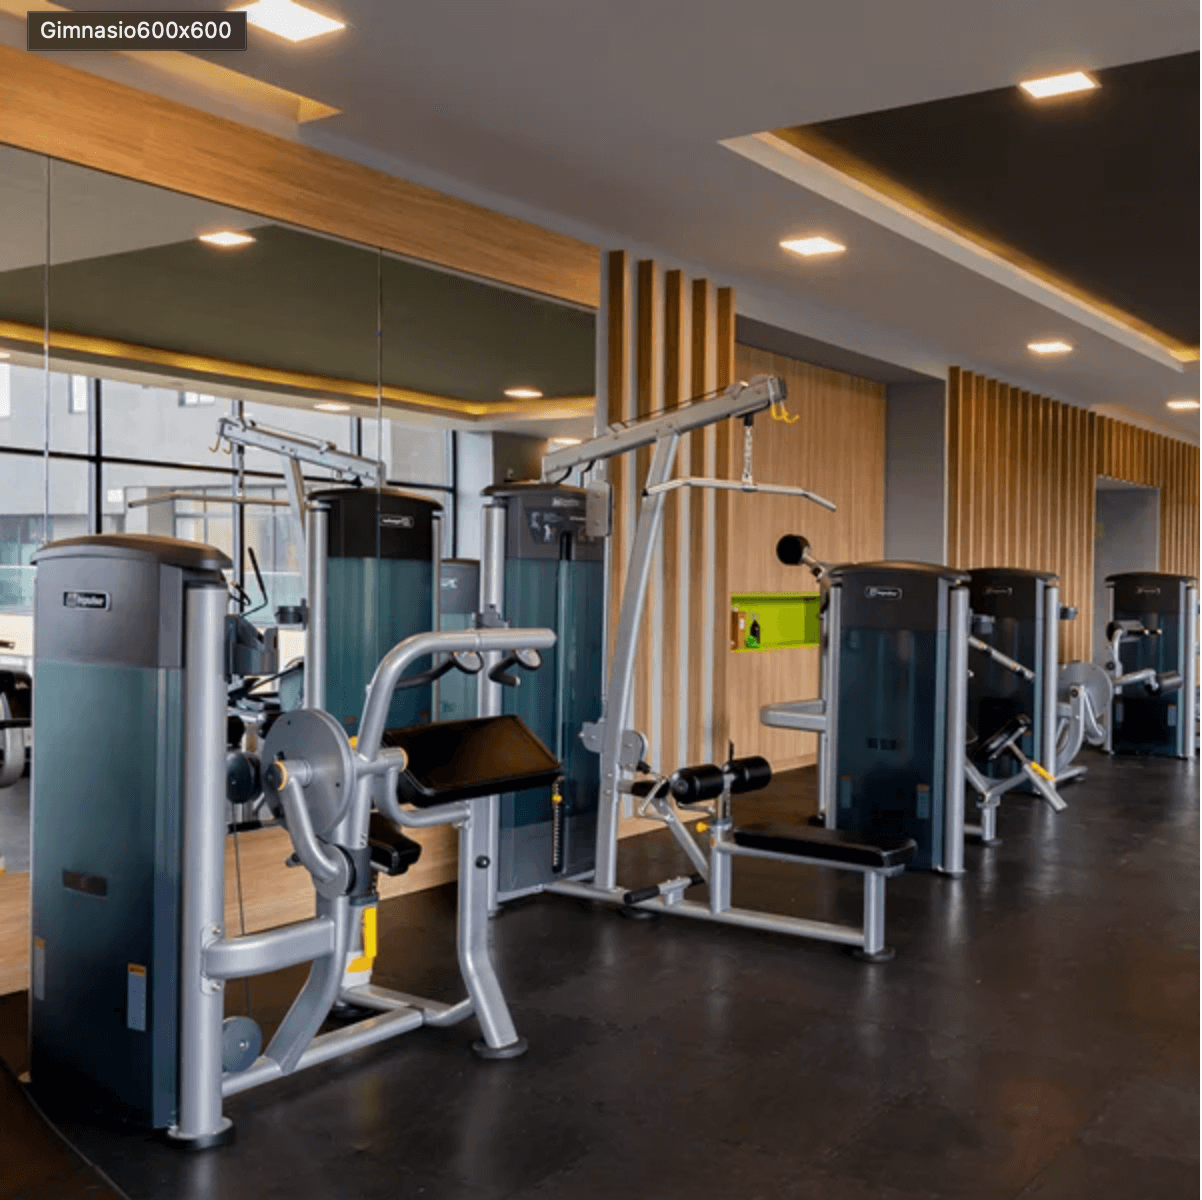 Mantente en forma en el gimnasio de Tive 3, equipamiento de primera en Bosque Real.